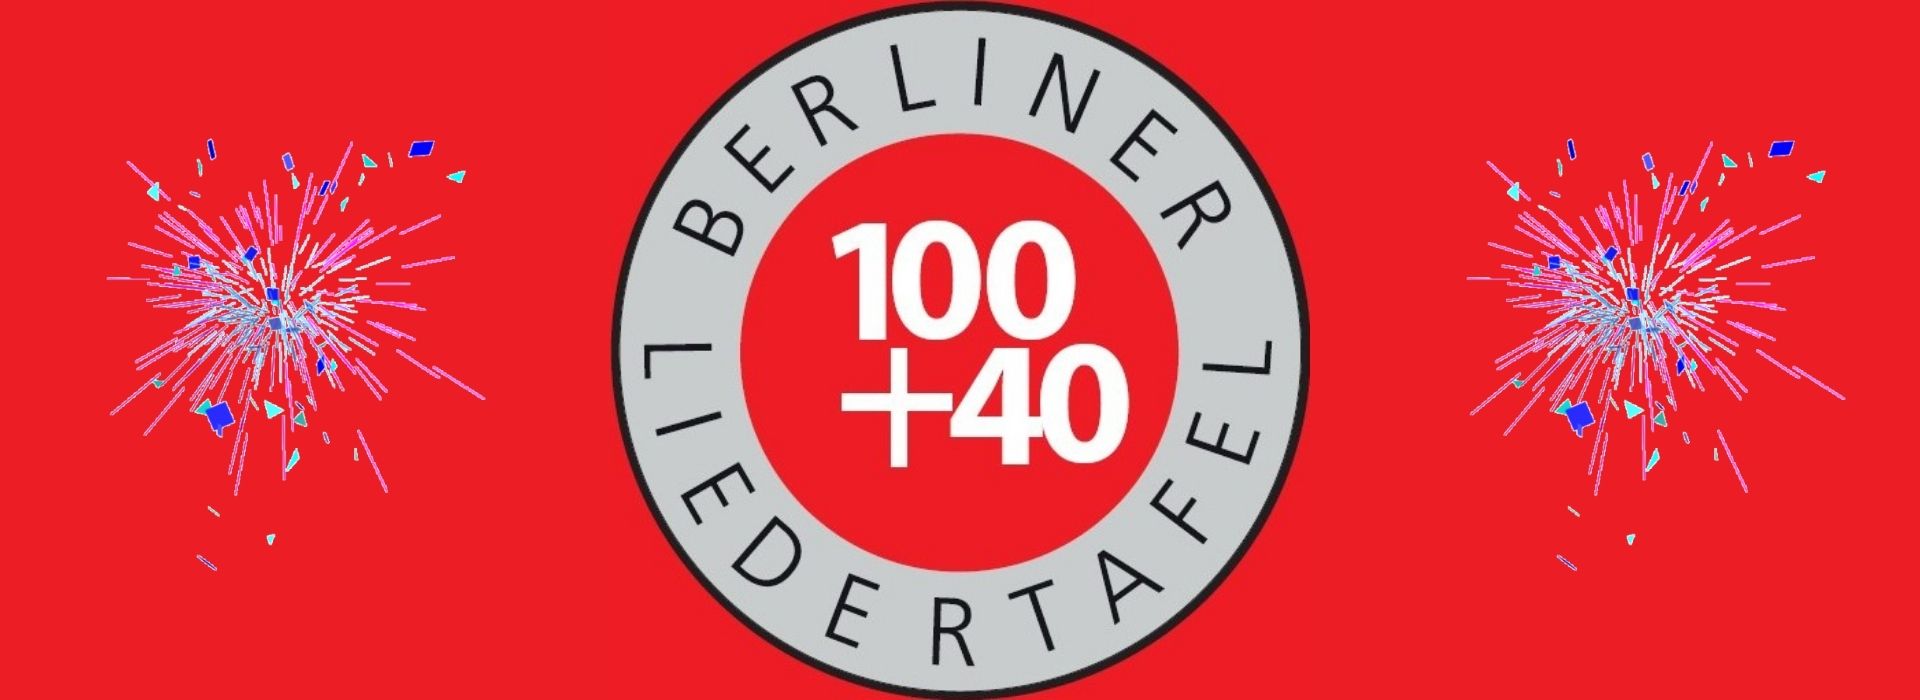 140 Jahre Berliner Liedertafel